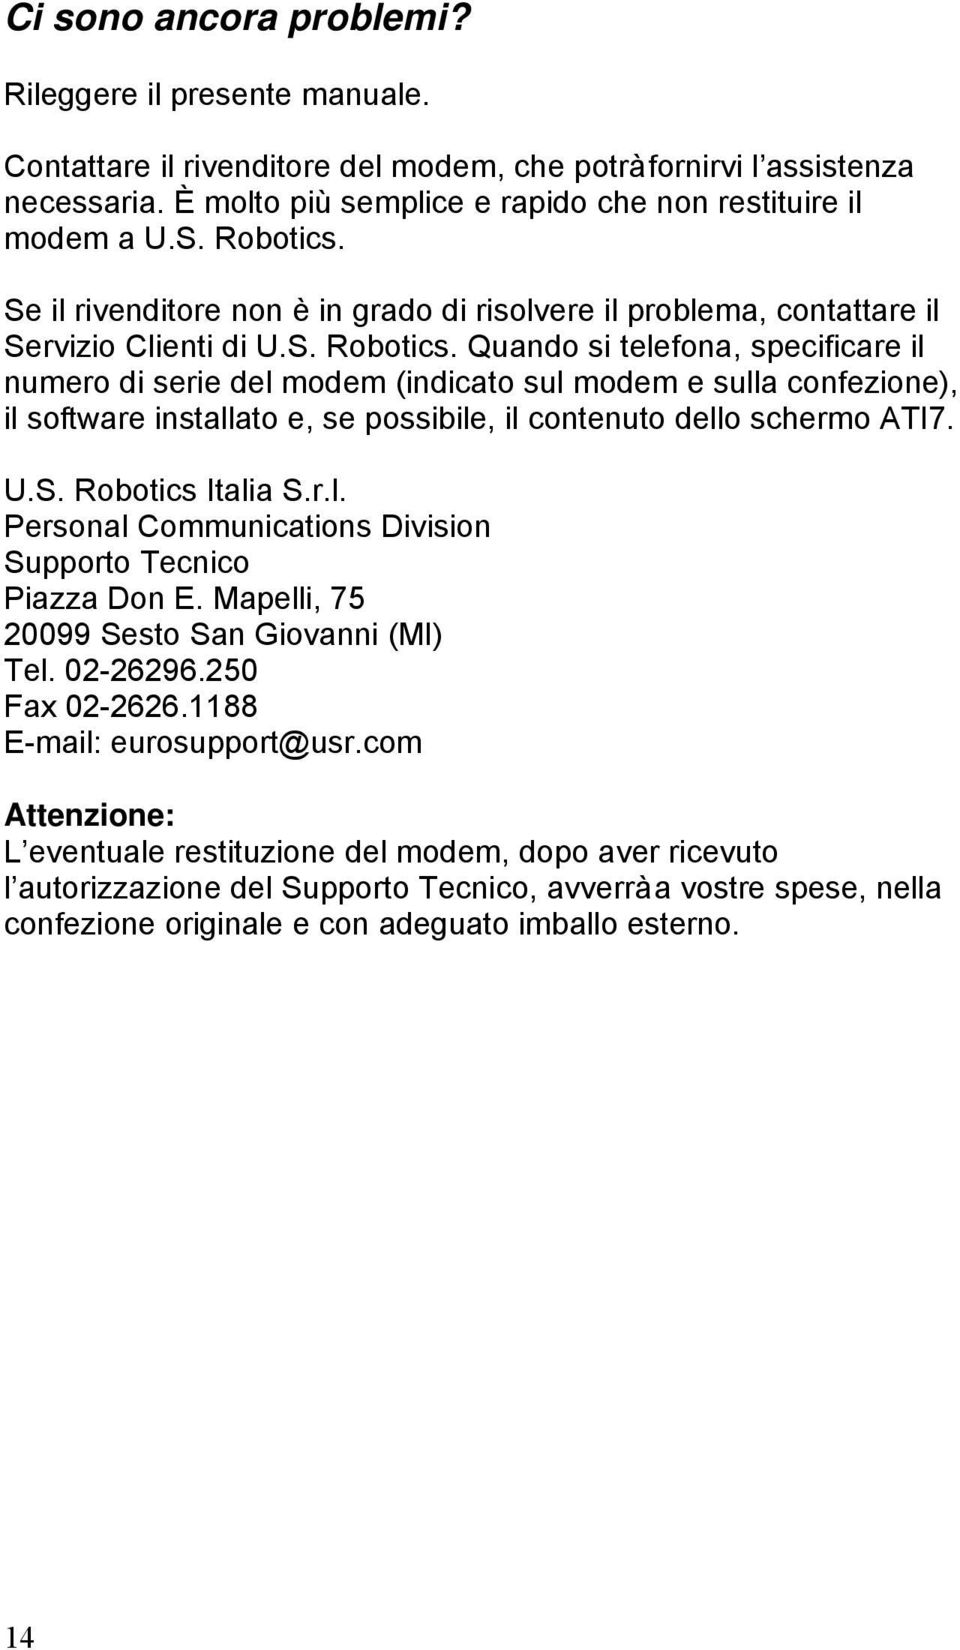 U.S. Robotics Italia S.r.l. Personal Communications Division Supporto Tecnico Piazza Don E. Mapelli, 75 20099 Sesto San Giovanni (MI) Tel. 02-26296.250 Fax 02-2626.1188 E-mail: eurosupport@usr.